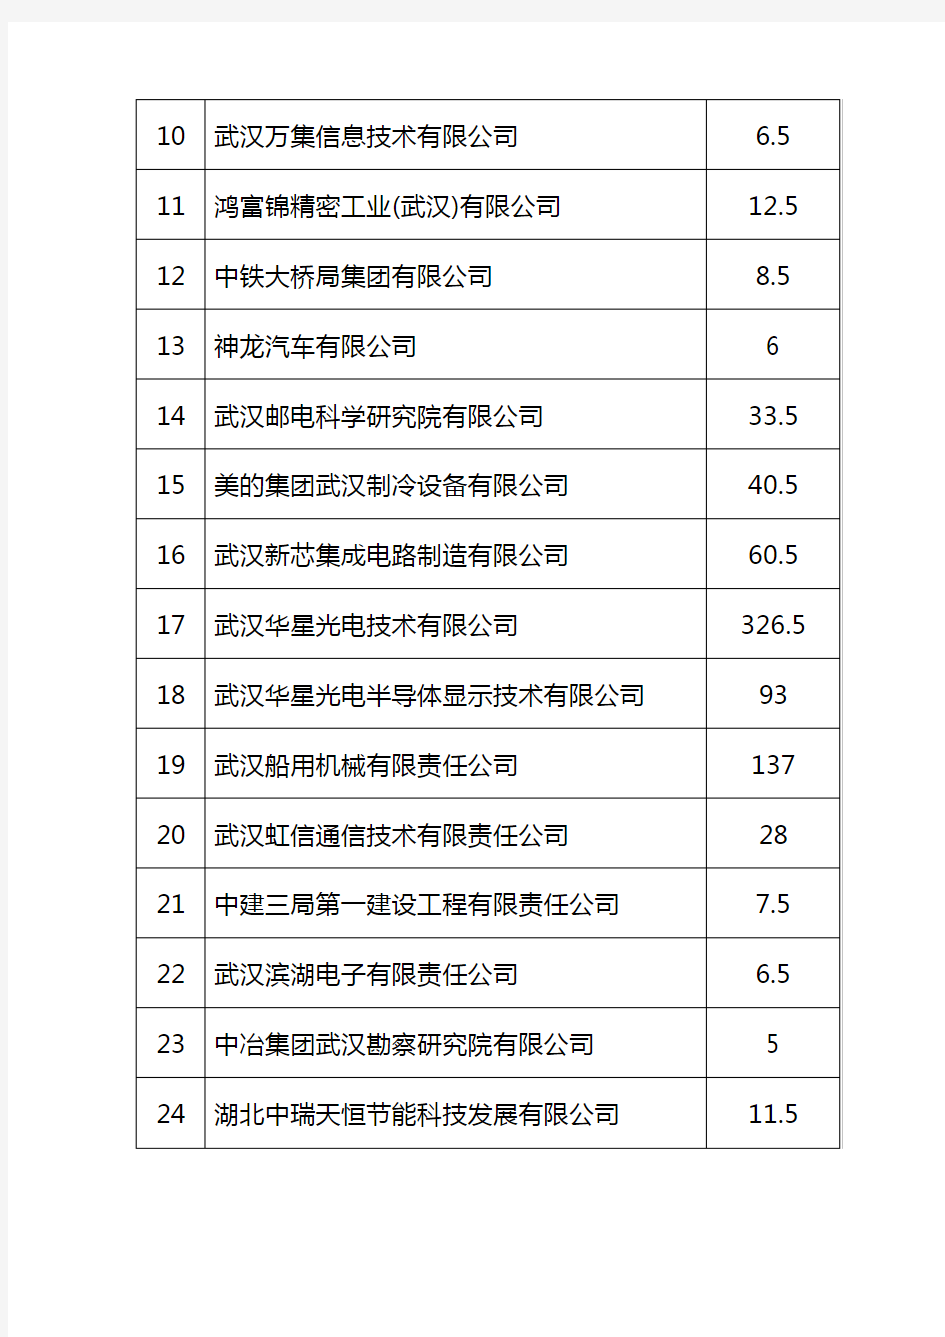 2020年武汉市知识产权发展资金明细表【模板】